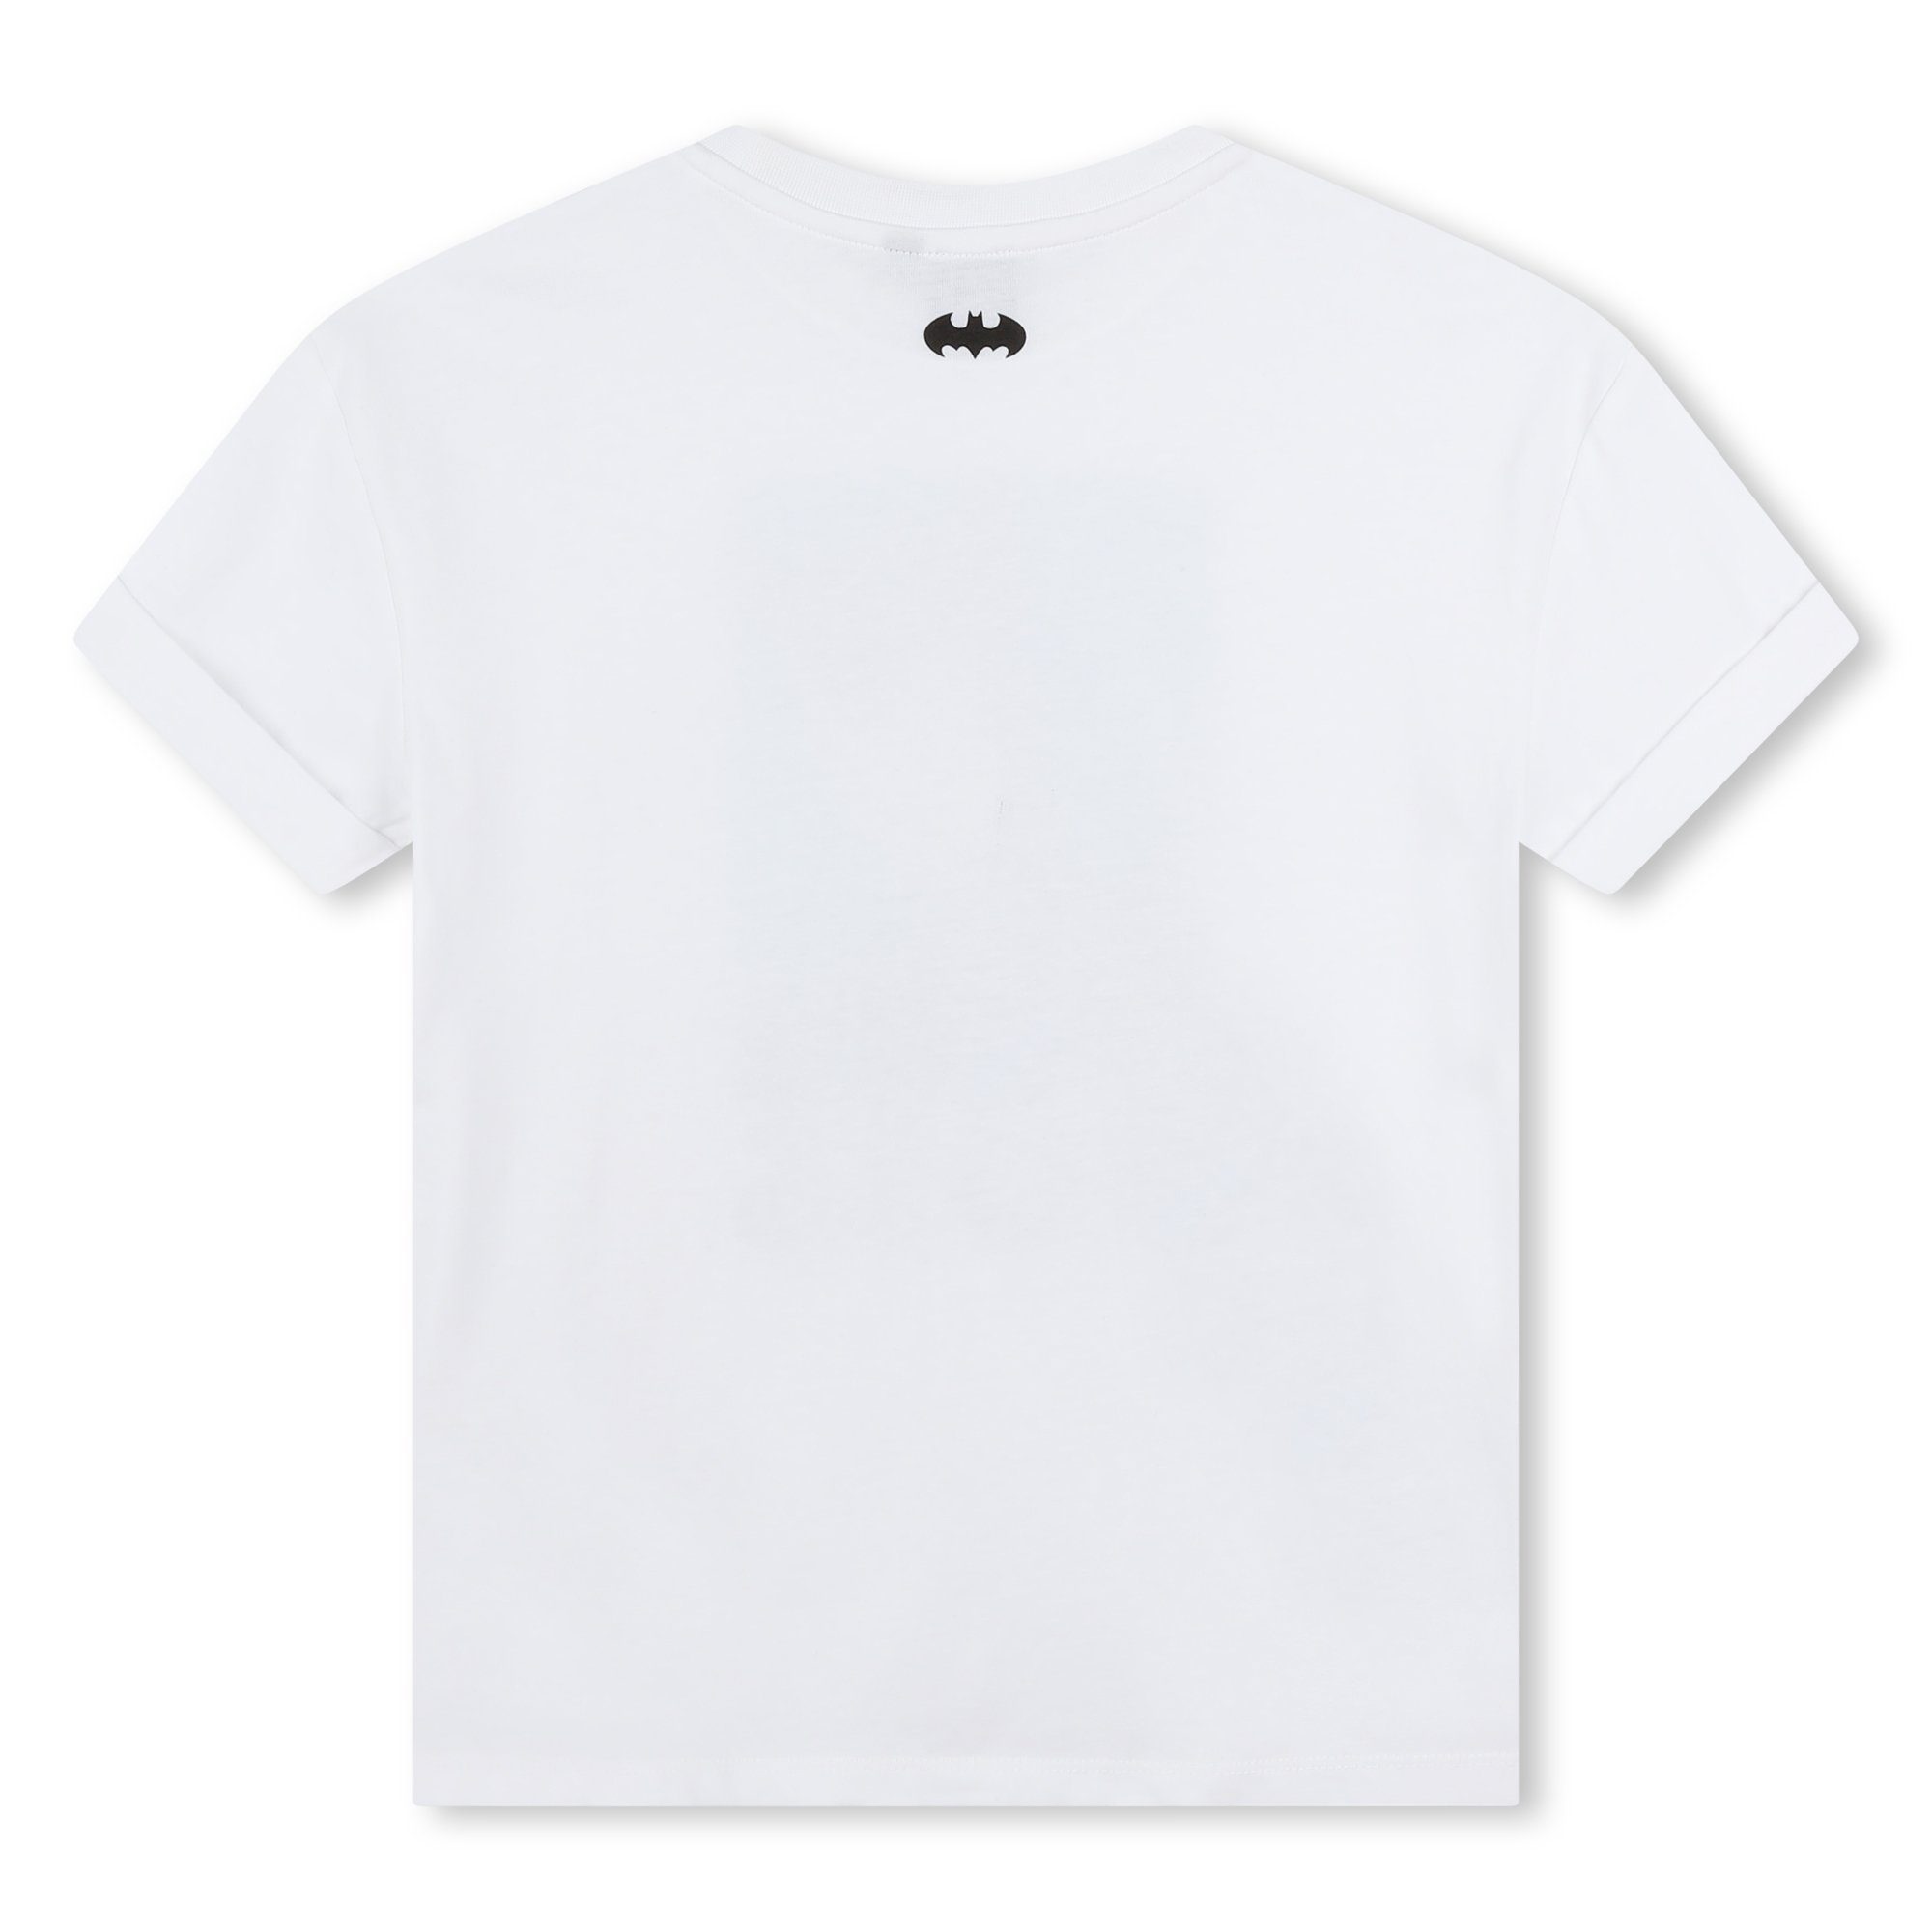 Warner BOSS - Bros x Kidswear Catwoman T-Shirt Boss Print-Shirt